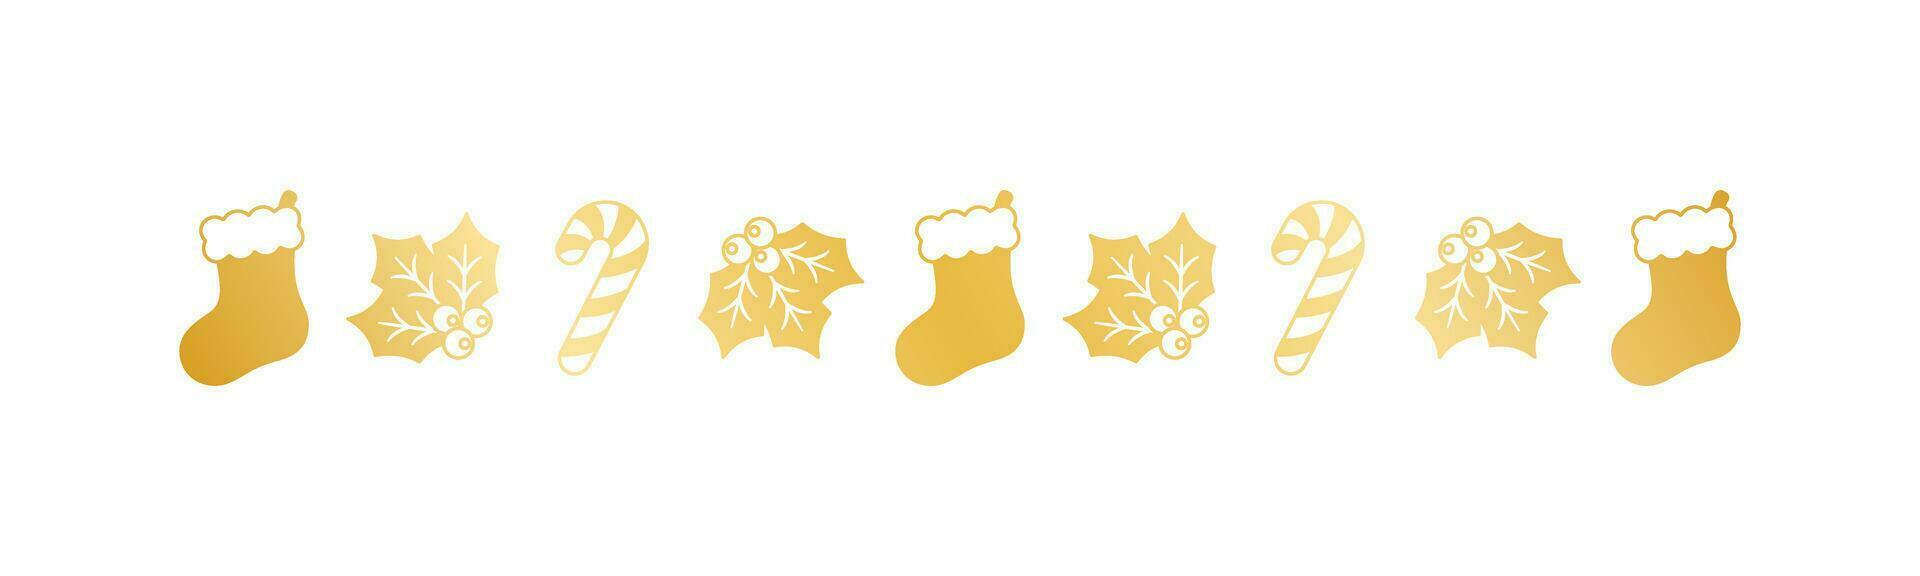 guld jul tema dekorativ gräns och text delare, jul strumpa, godis sockerrör och mistel mönster silhuett. vektor illustration.